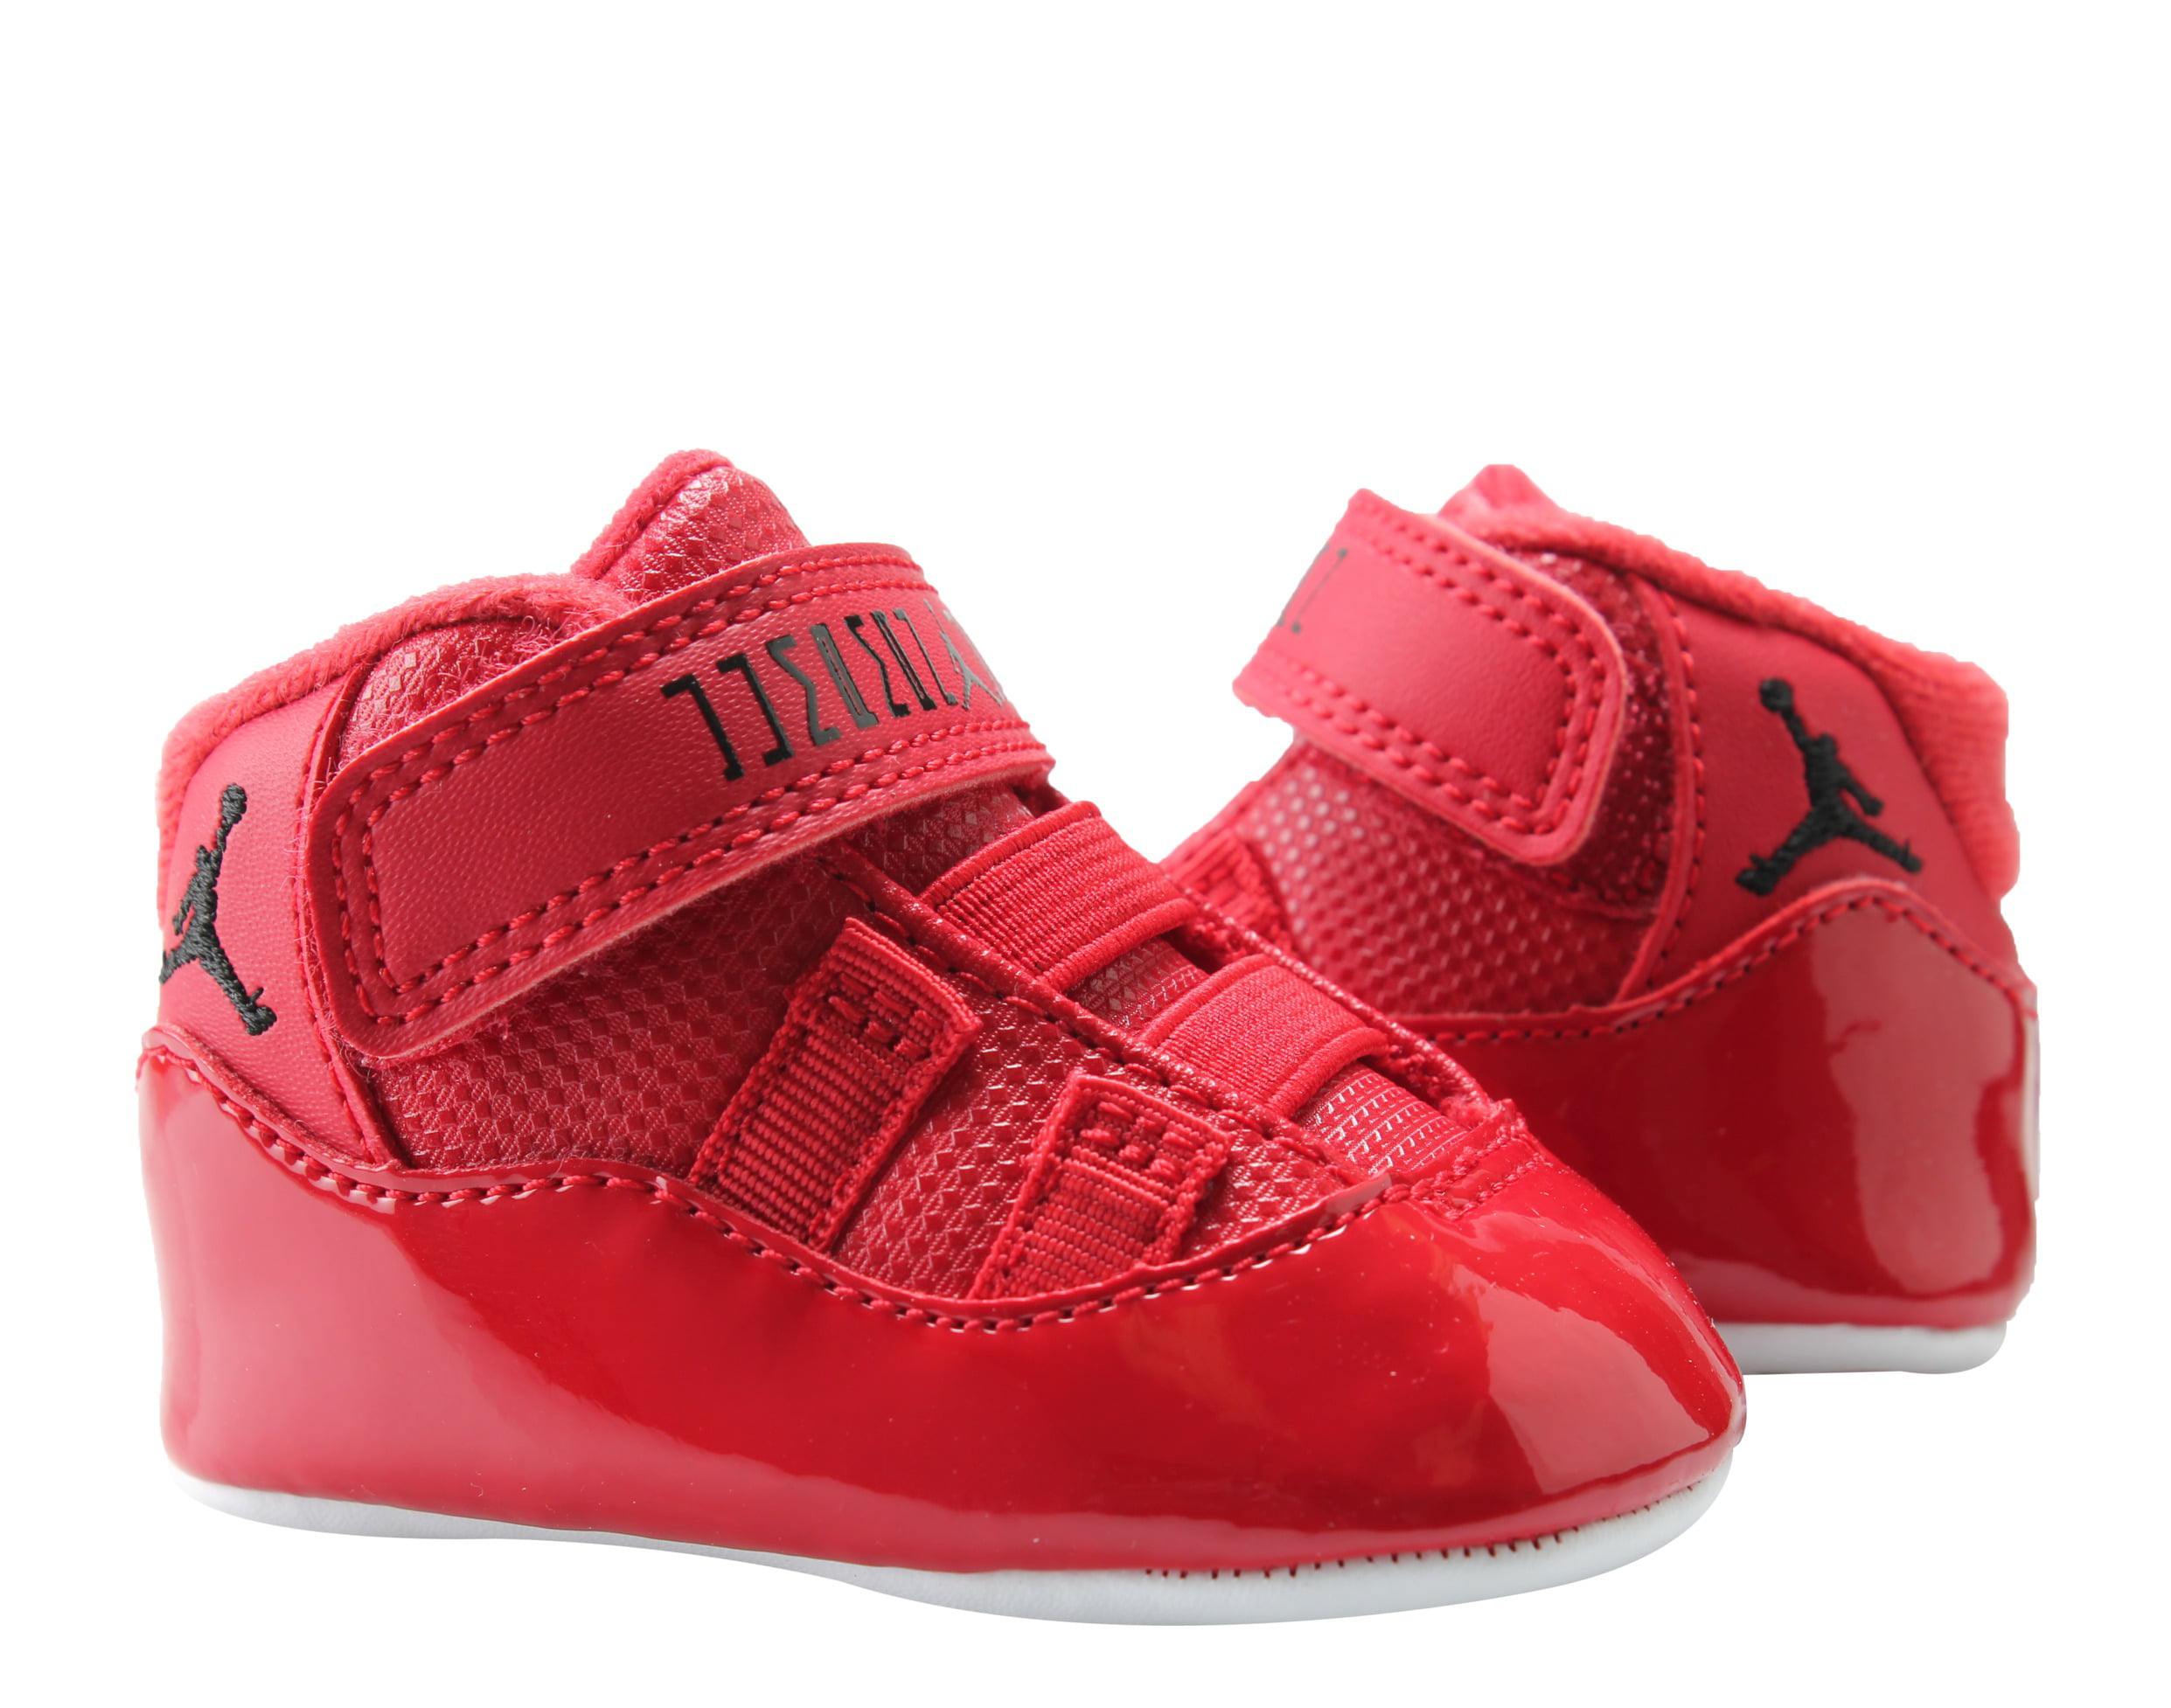 Nike Air Jordan 11 Retro Gift Pack 